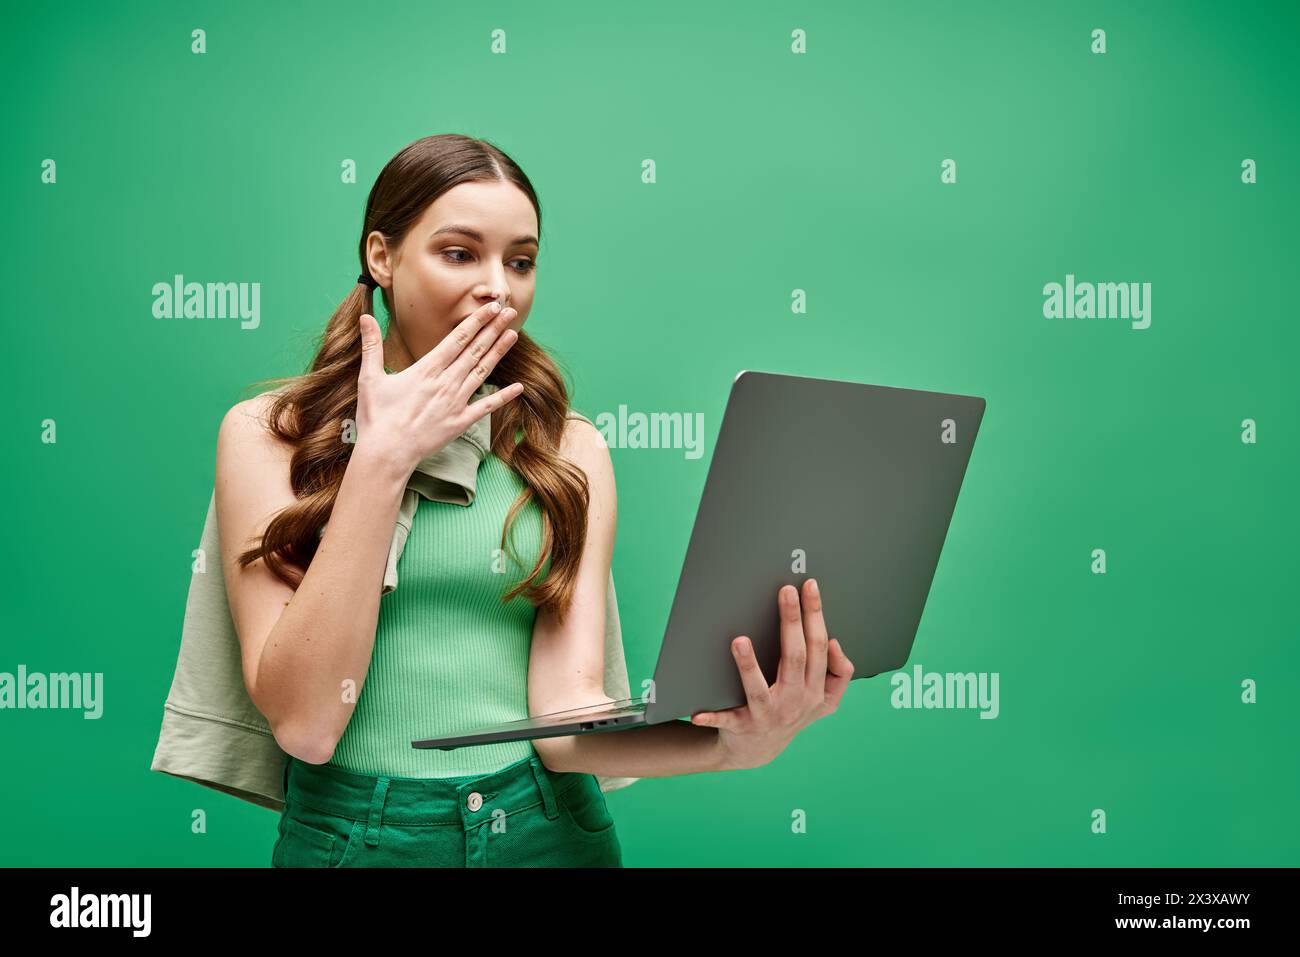 Una giovane donna di 20 anni si copre la bocca mentre usa un notebook in uno studio, suggerendo pensieri o emozioni nascosti. Foto Stock